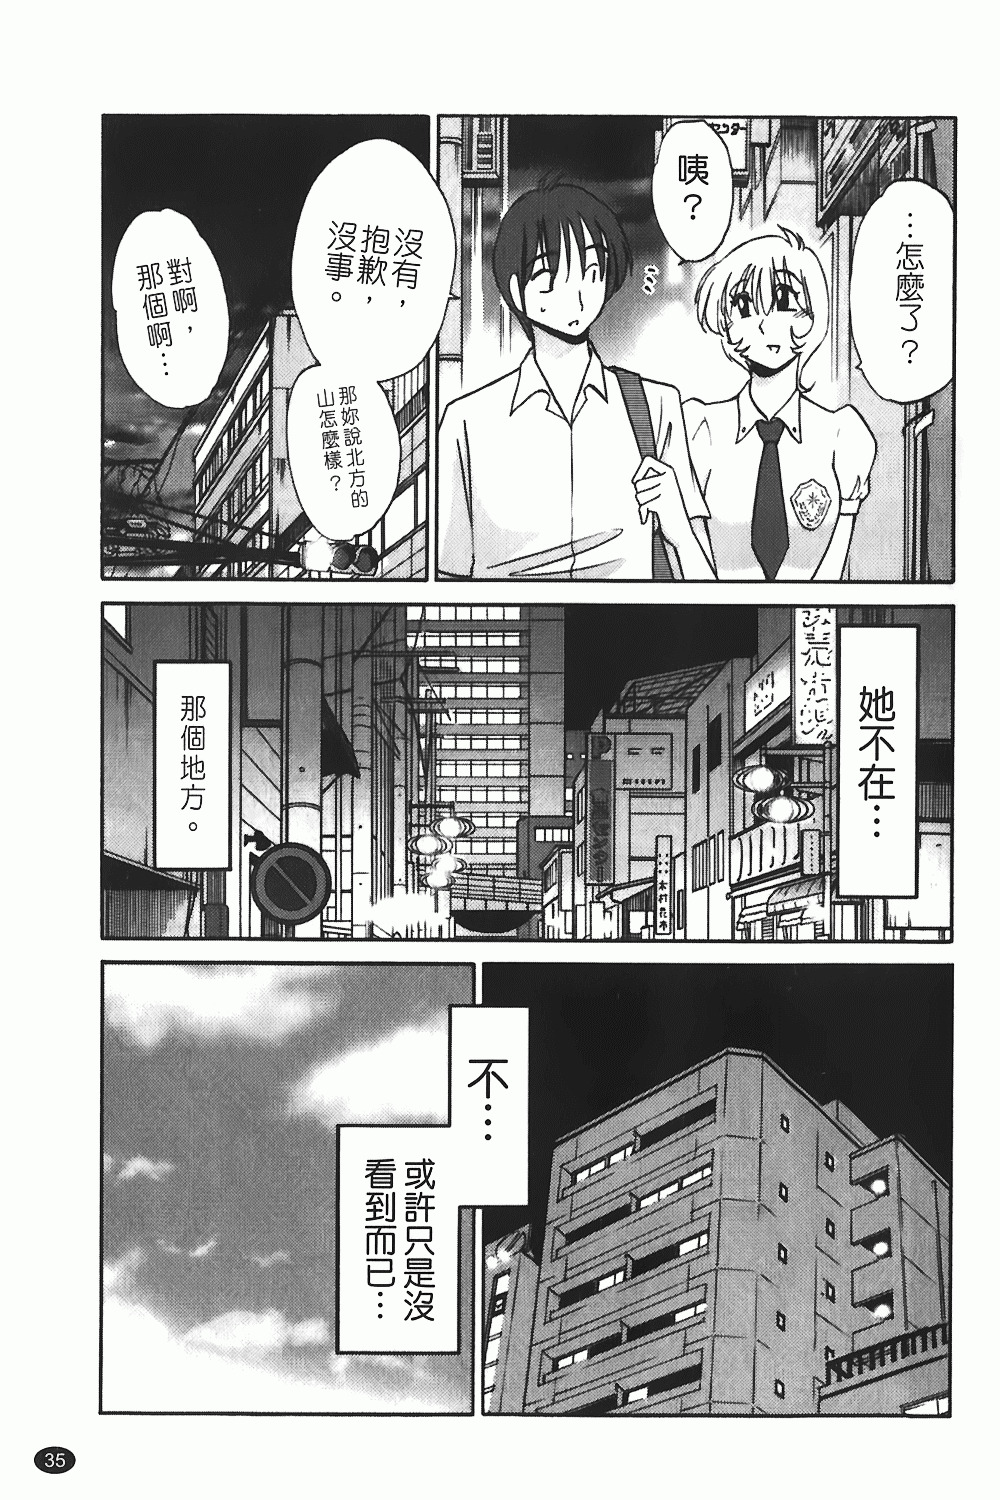 [TsuyaTsuya] Monokage no Iris 1 | 陰影中的伊利斯 1 [Chinese] page 32 full